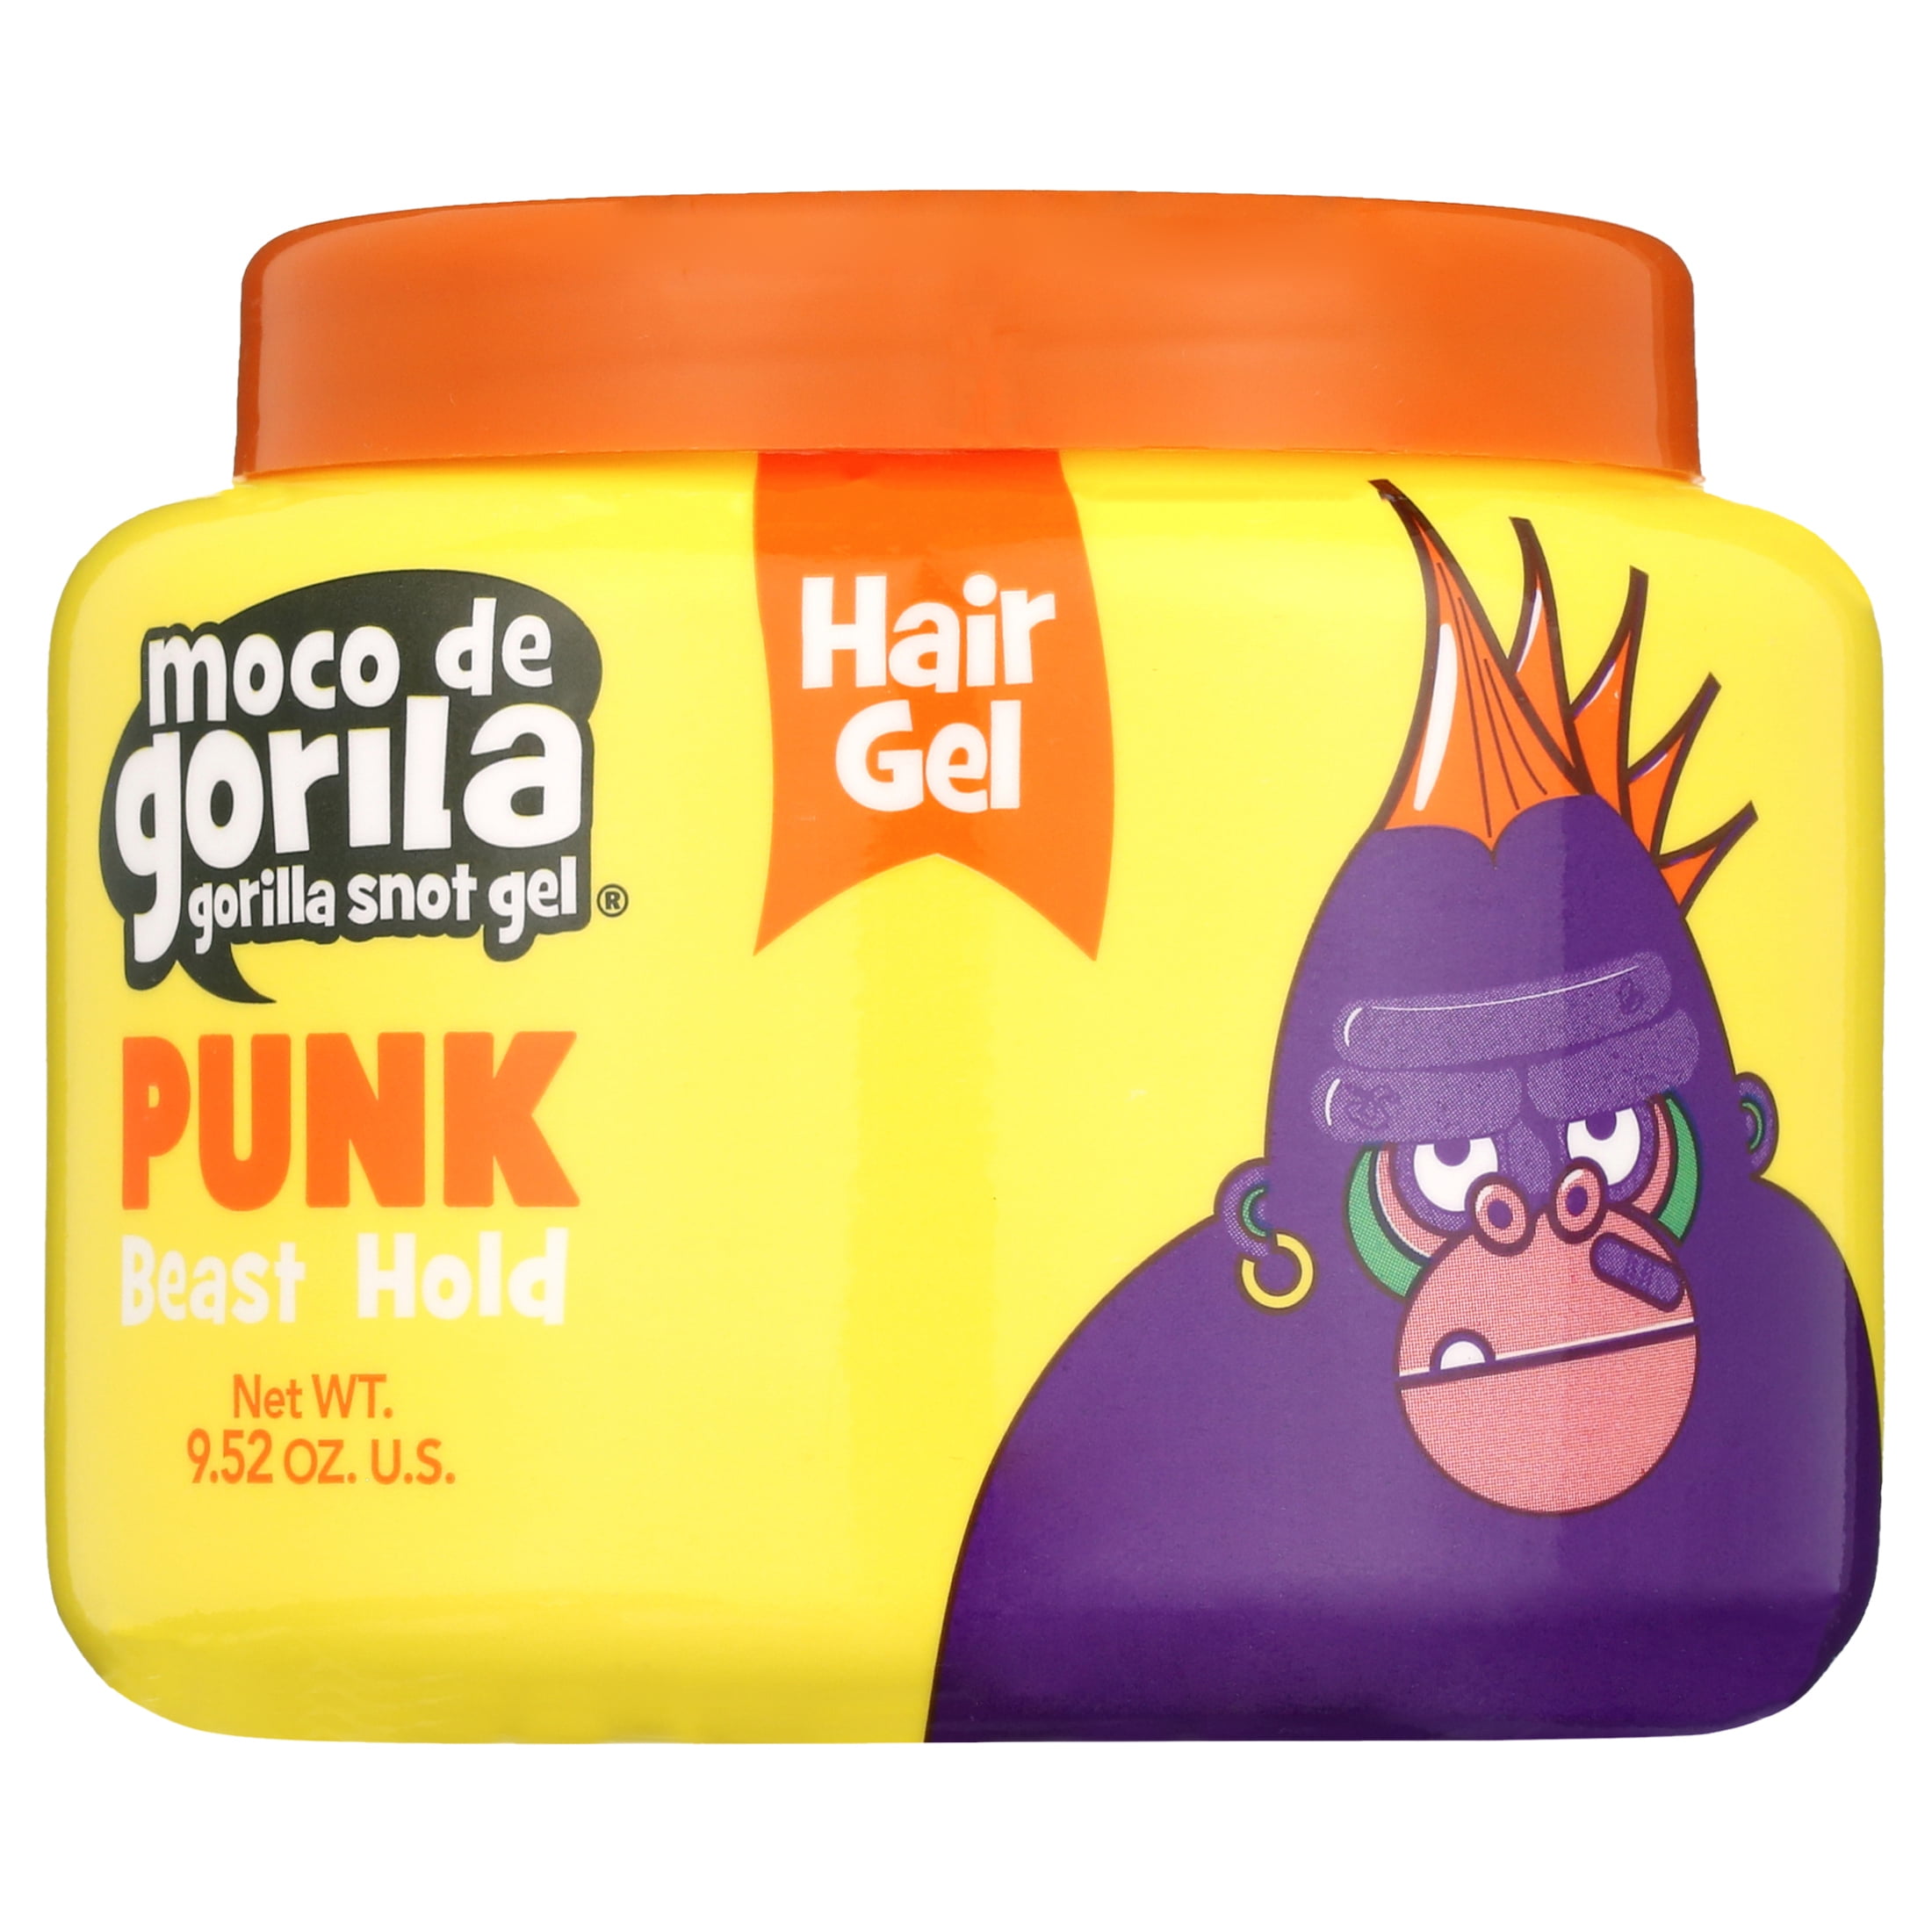 Monkey Brains Hair Glue, Psycho Sticky, Extreme Hold, Shop